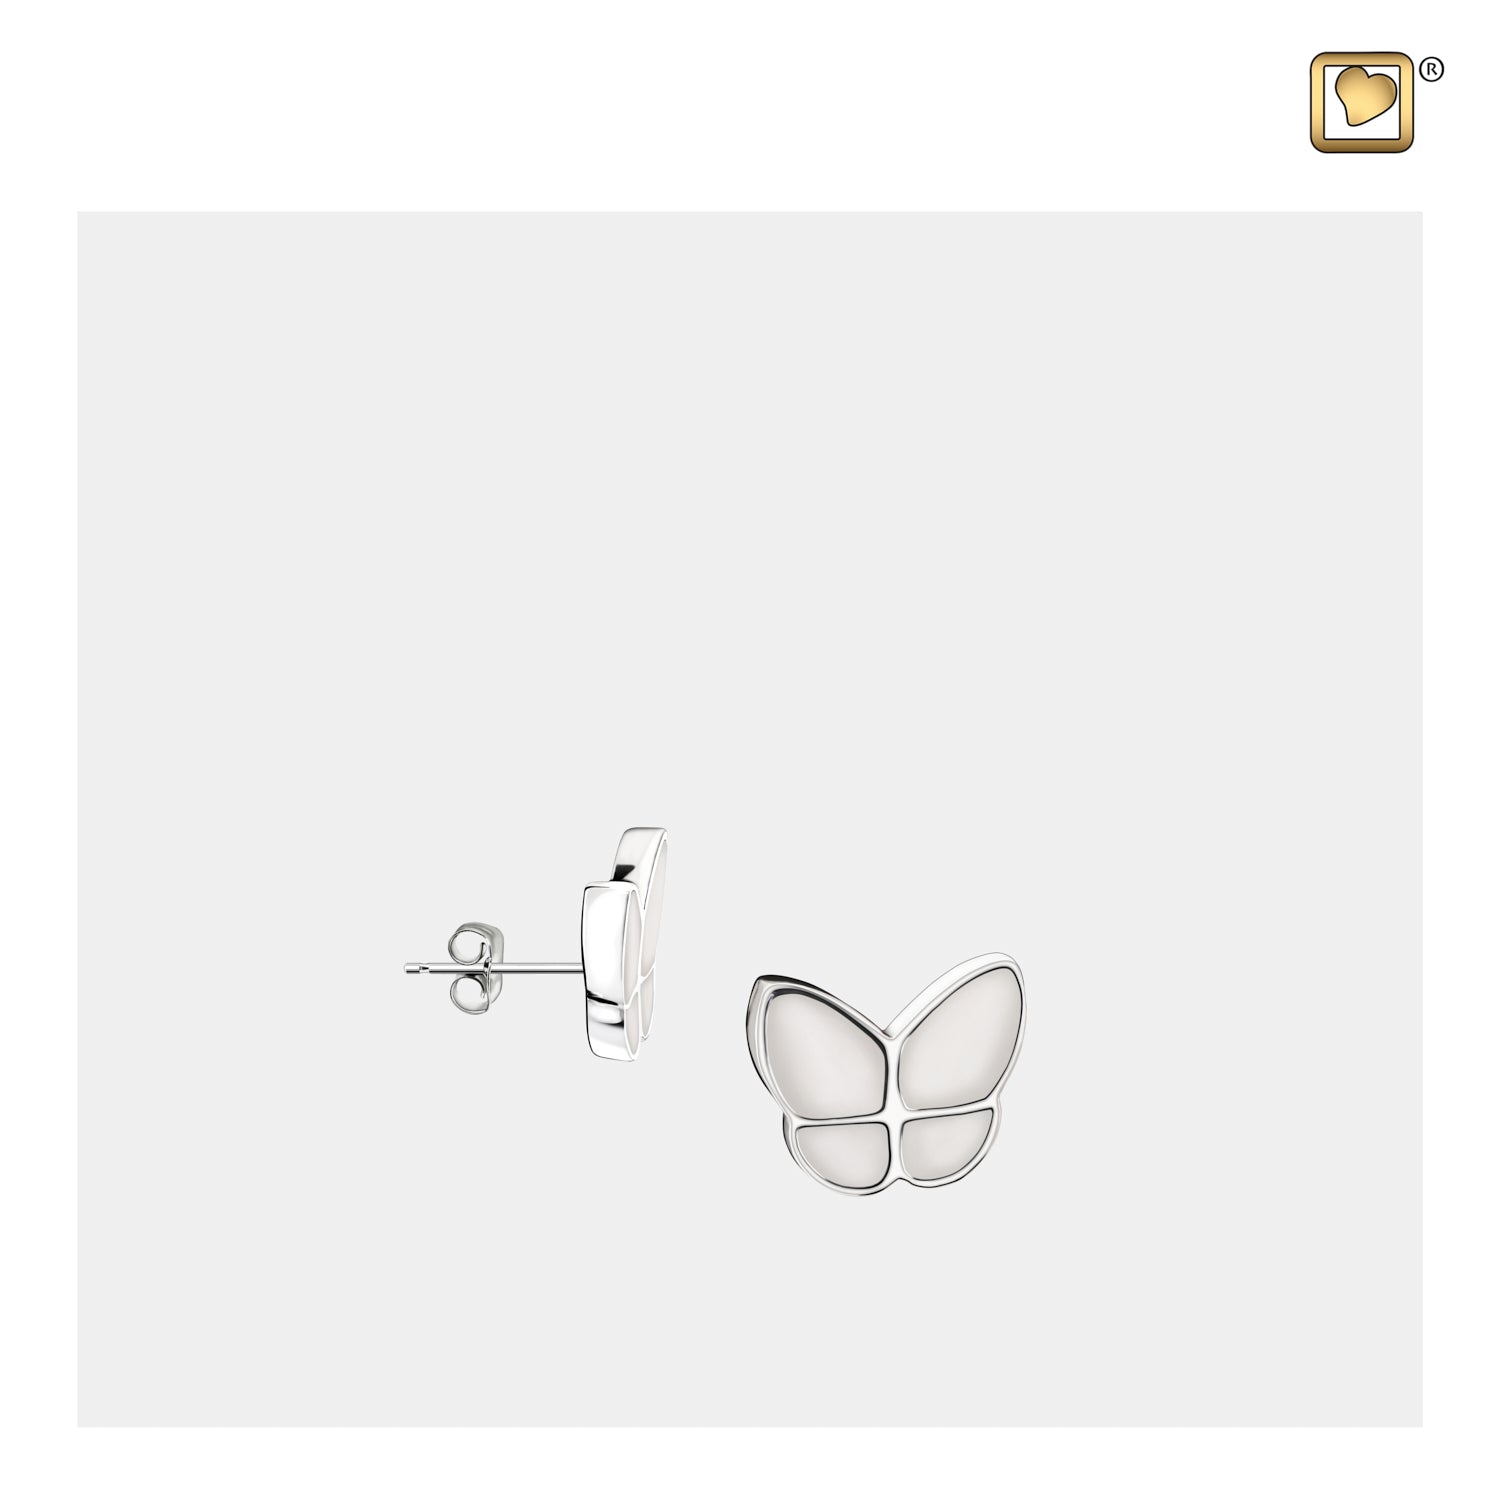 Wings of Hopeª Butterfly Pearl Earrings